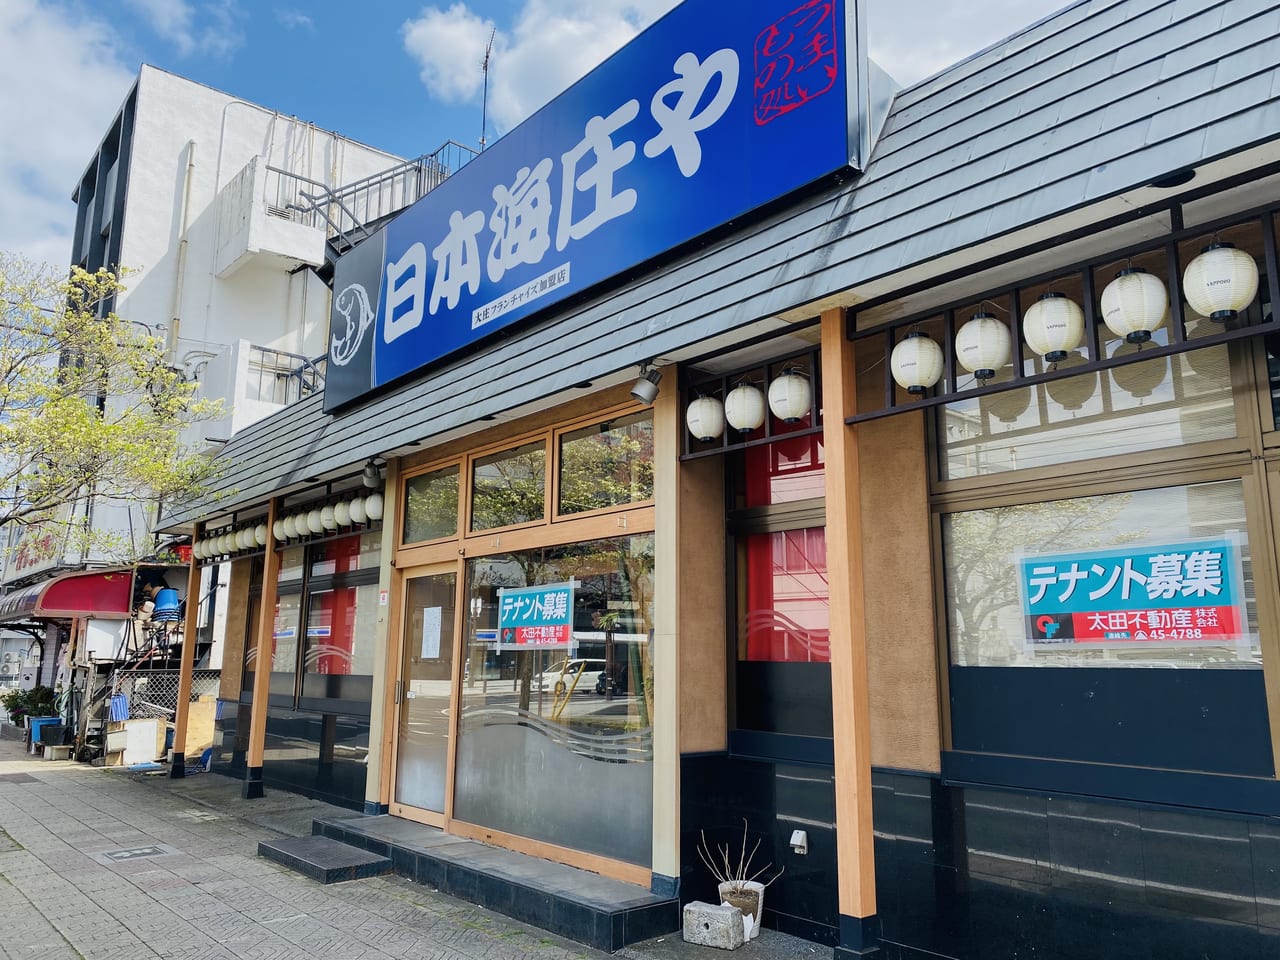 太田市 人気海鮮居酒屋 日本海庄や 太田南口店 が3 22に閉店していました 号外net 太田市